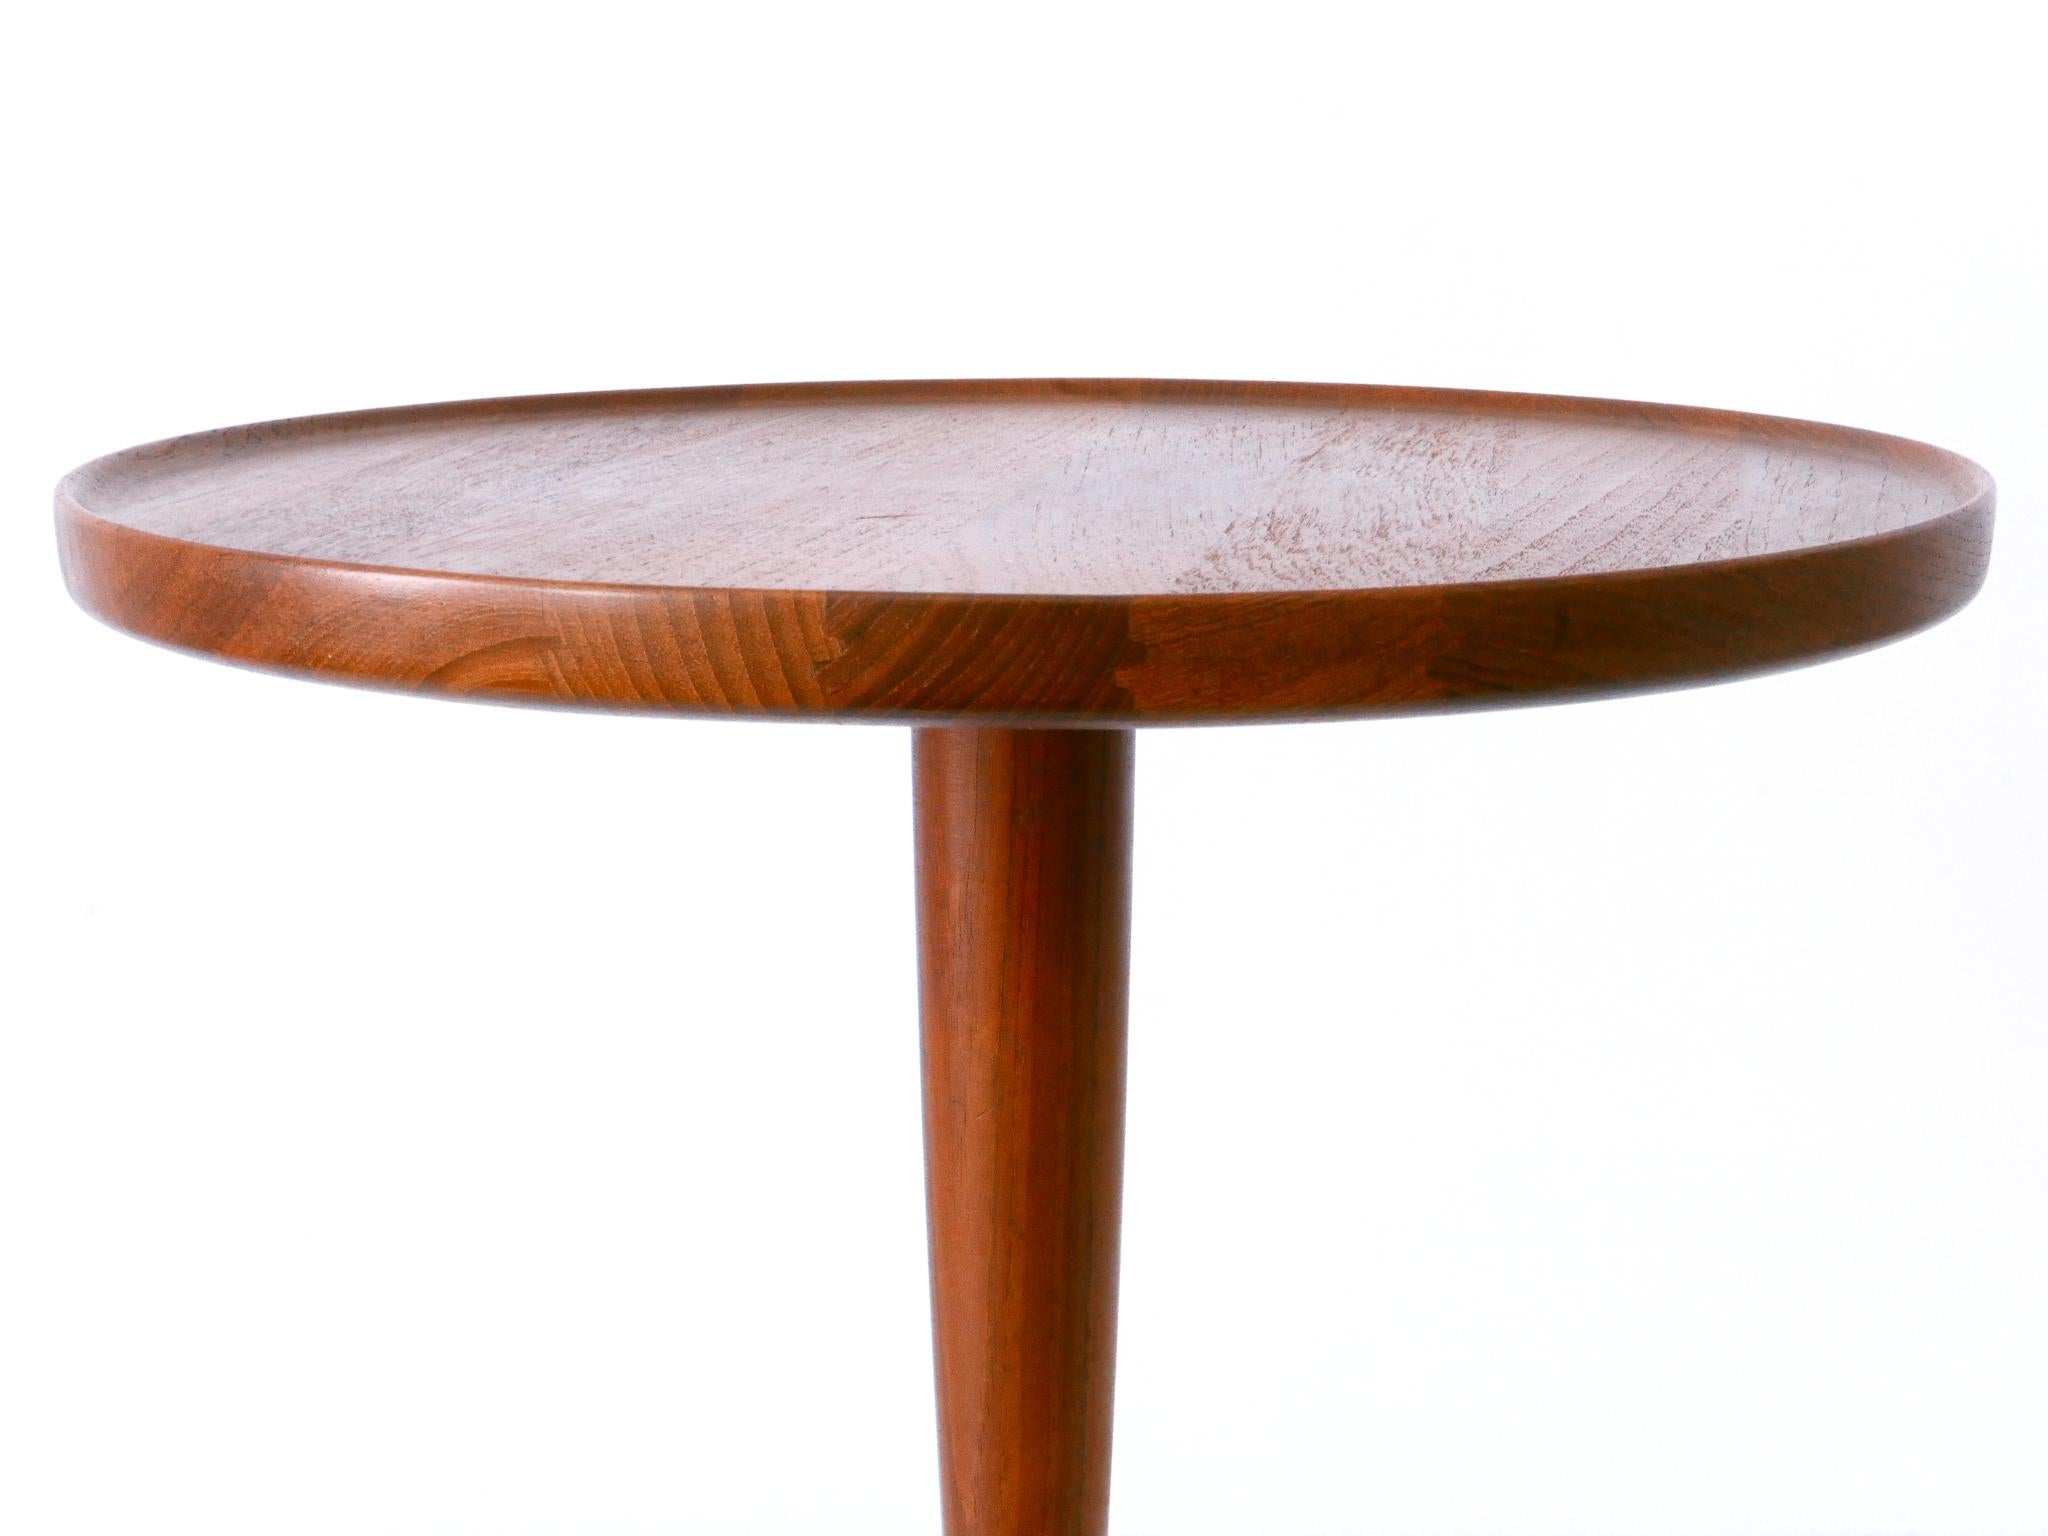 Elegant Mid-Century Modern Teak Side Table by Hans C. Andersen for Artek 1960s For Sale 4